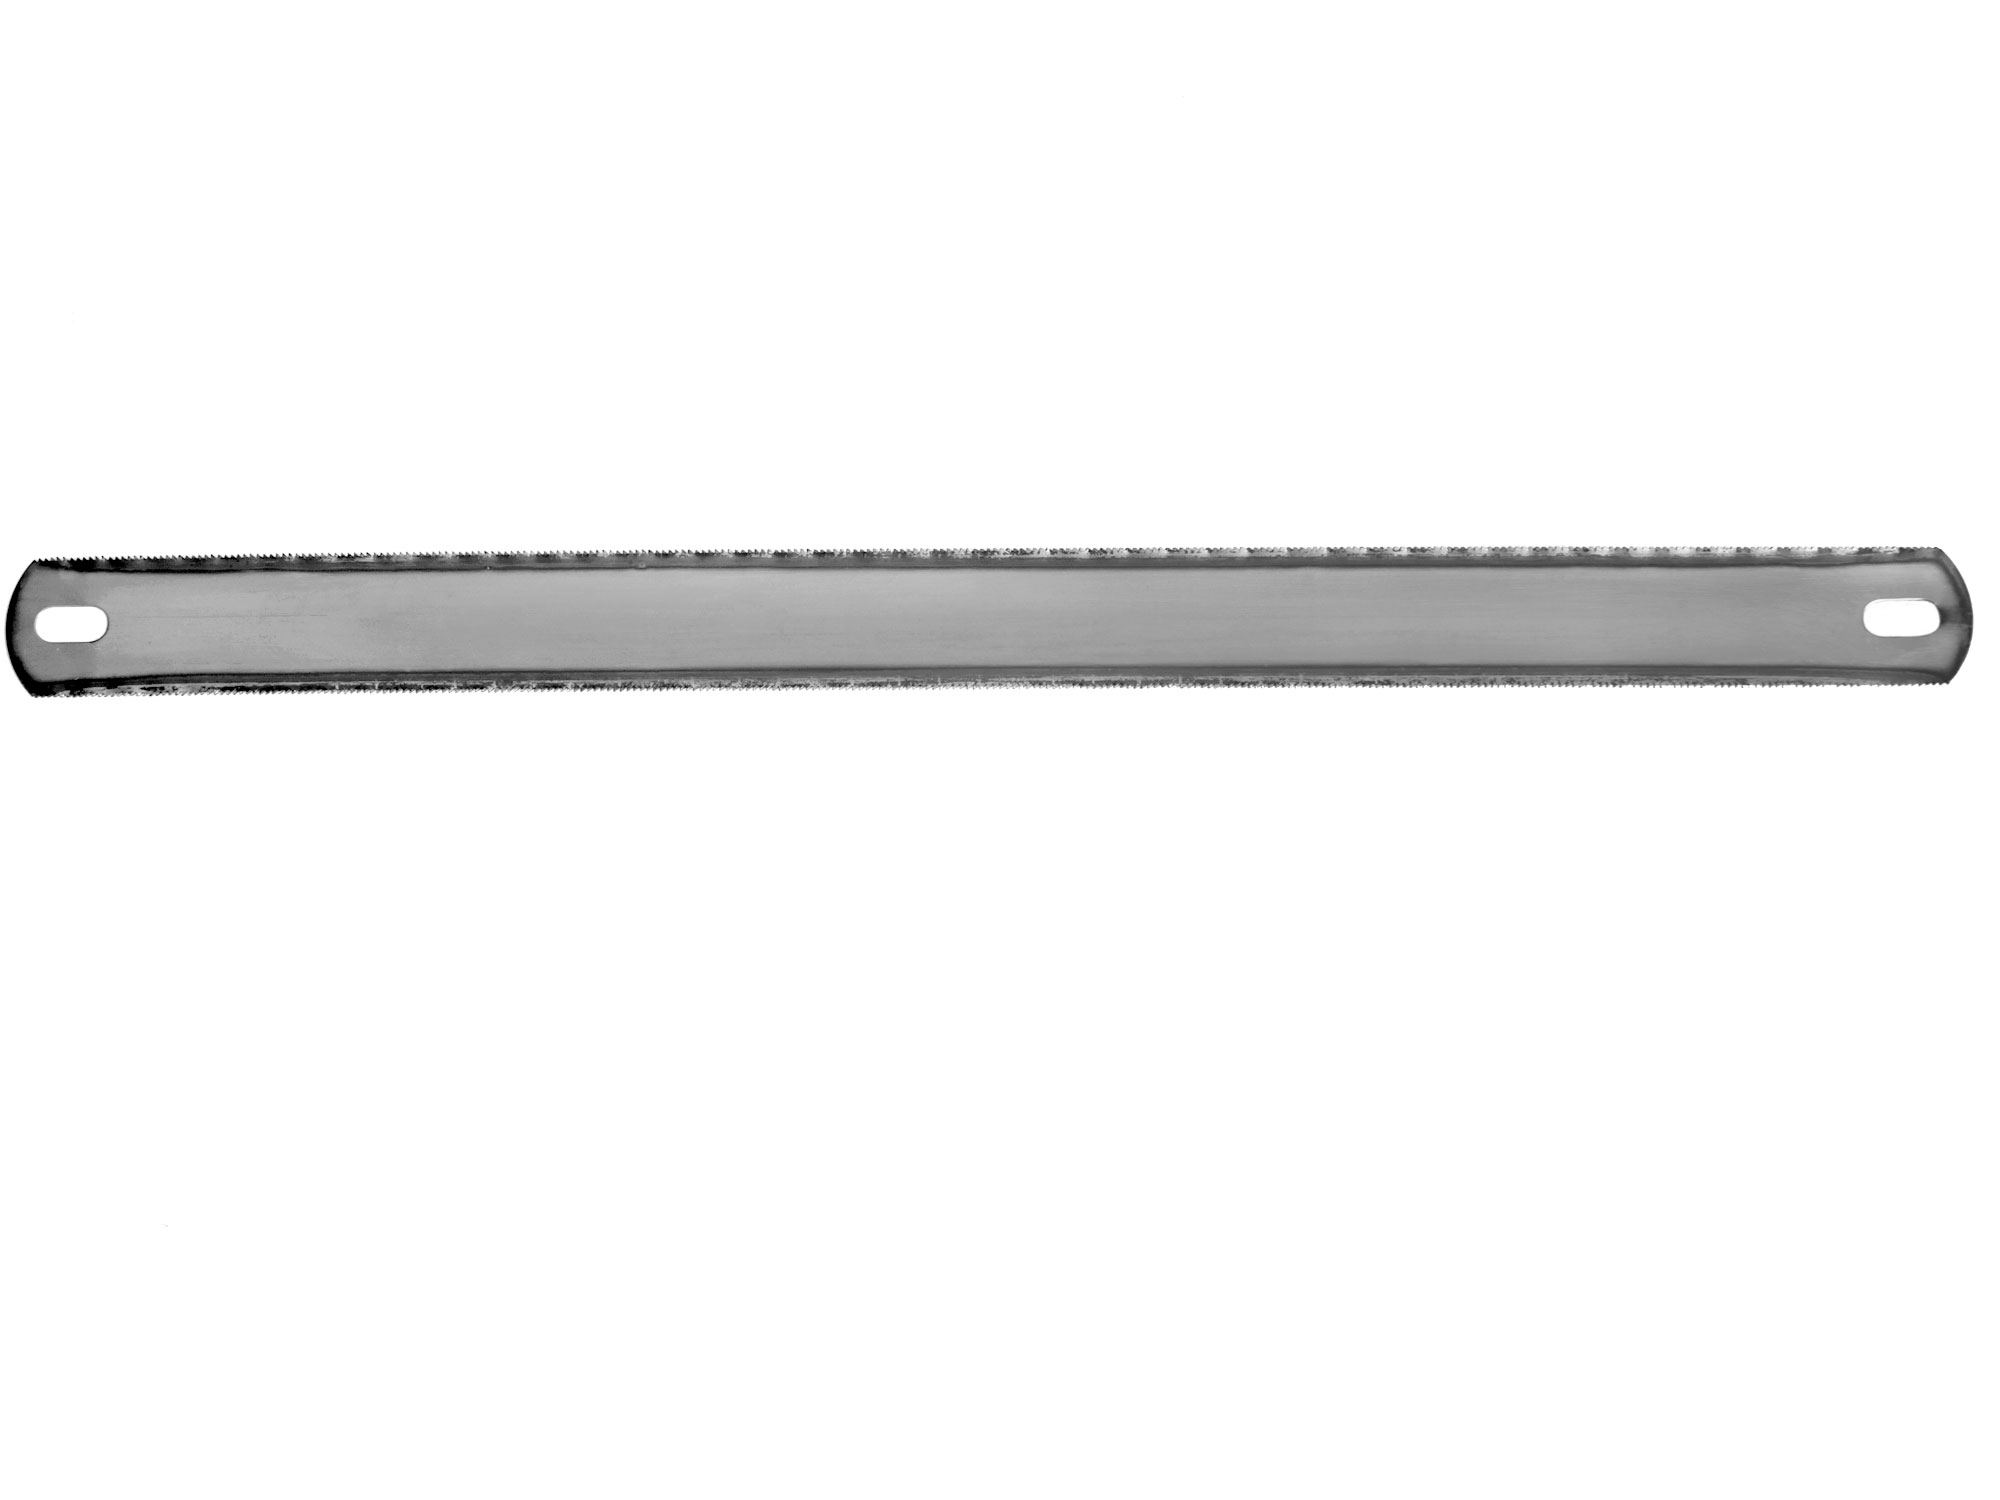 plátky pilové na kov oboustranné, 300mm, bal. 72ks, EXTOL CRAFT 1724